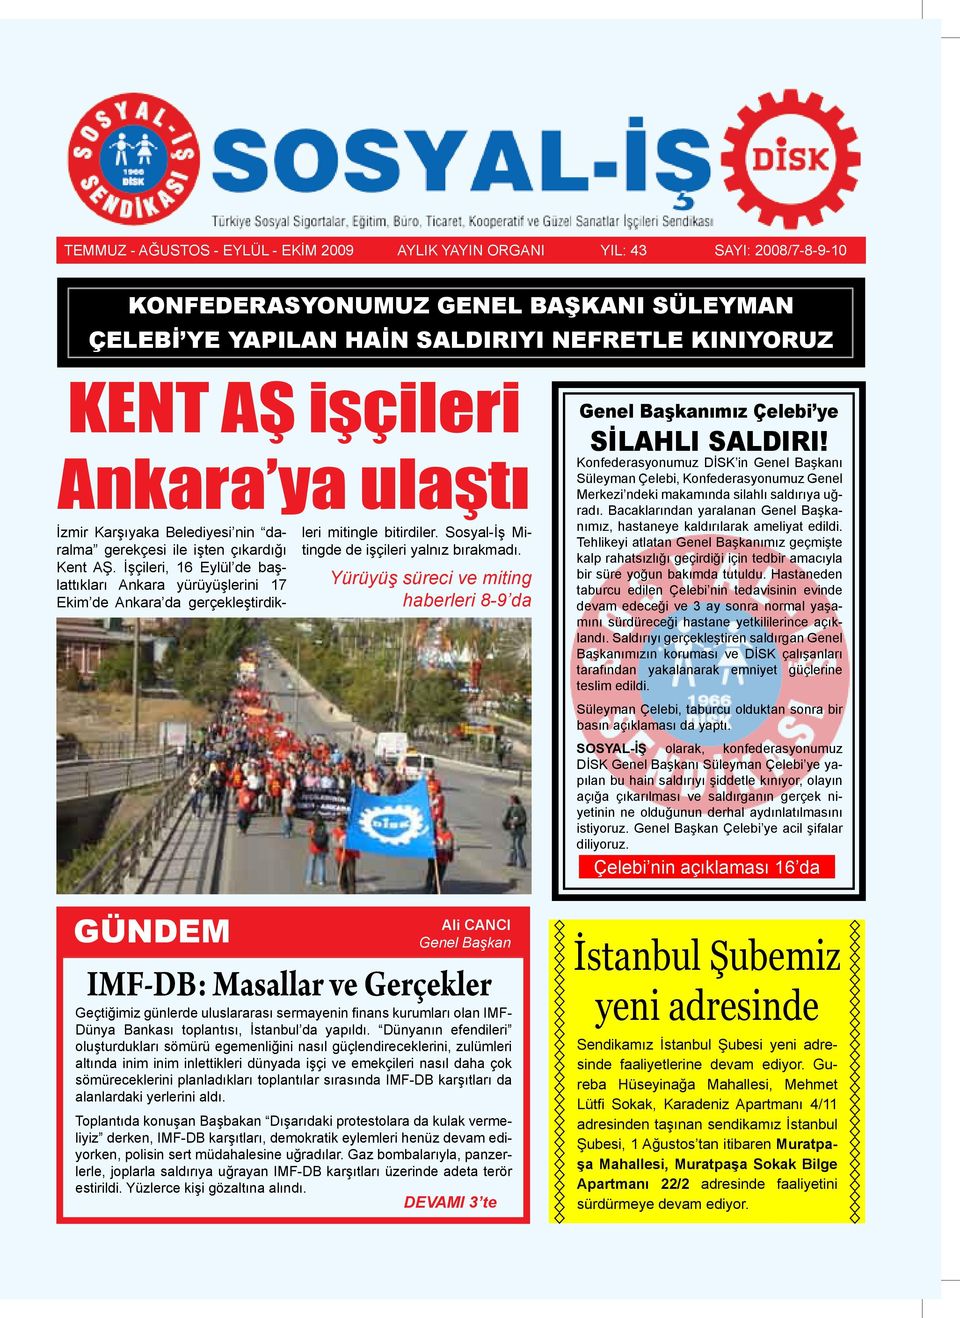 İşçileri, 16 Eylül de başlattıkları Ankara yürüyüşlerini 17 Ekim de Ankara da gerçekleştirdikleri mitingle bitirdiler. Sosyal-İş Mitingde de işçileri yalnız bırakmadı.